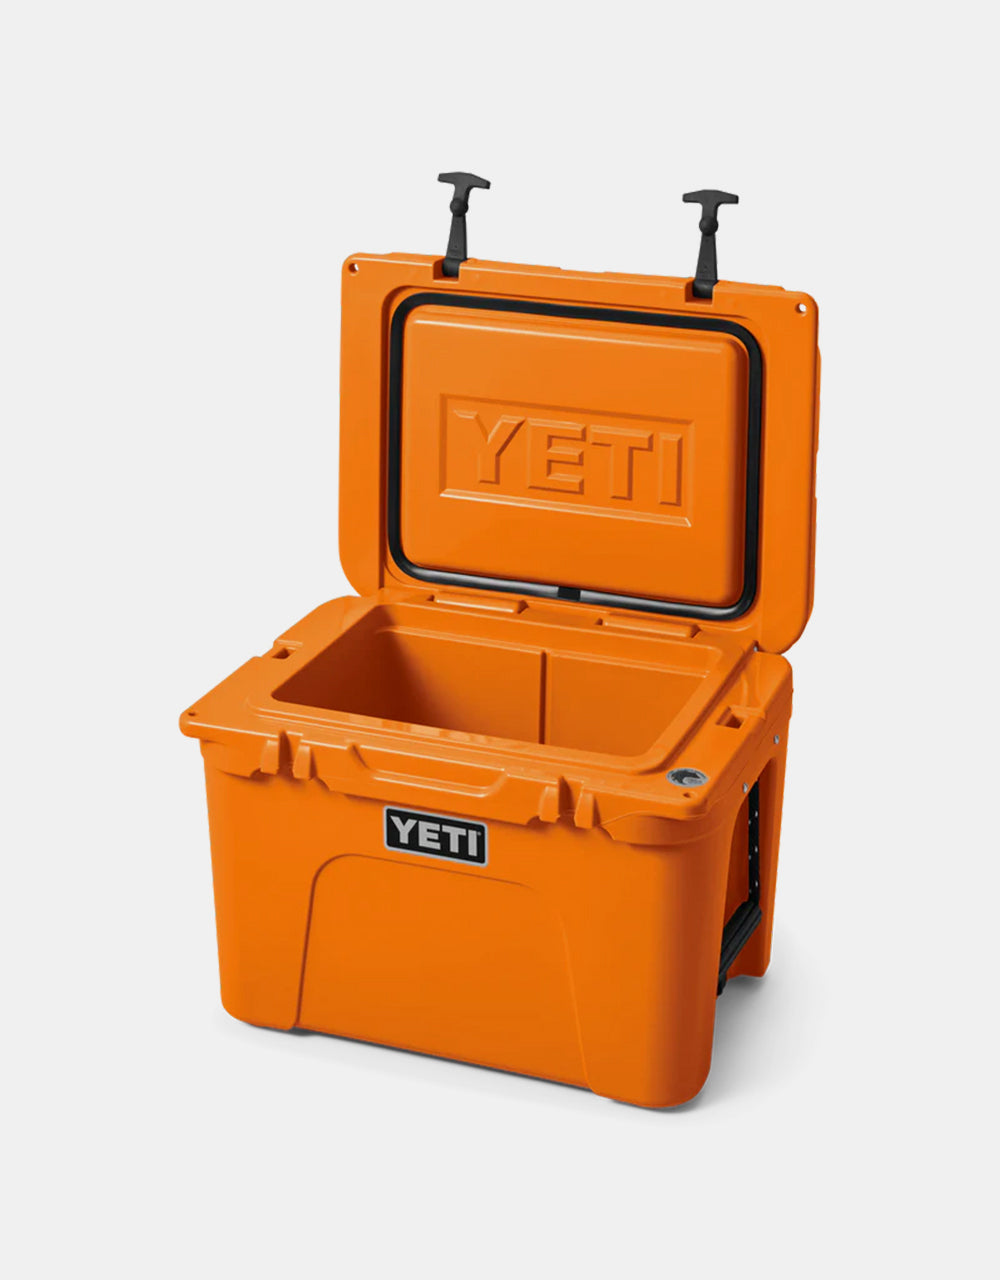 YETI Tundra® 35 Cool Box - King Crab Orange